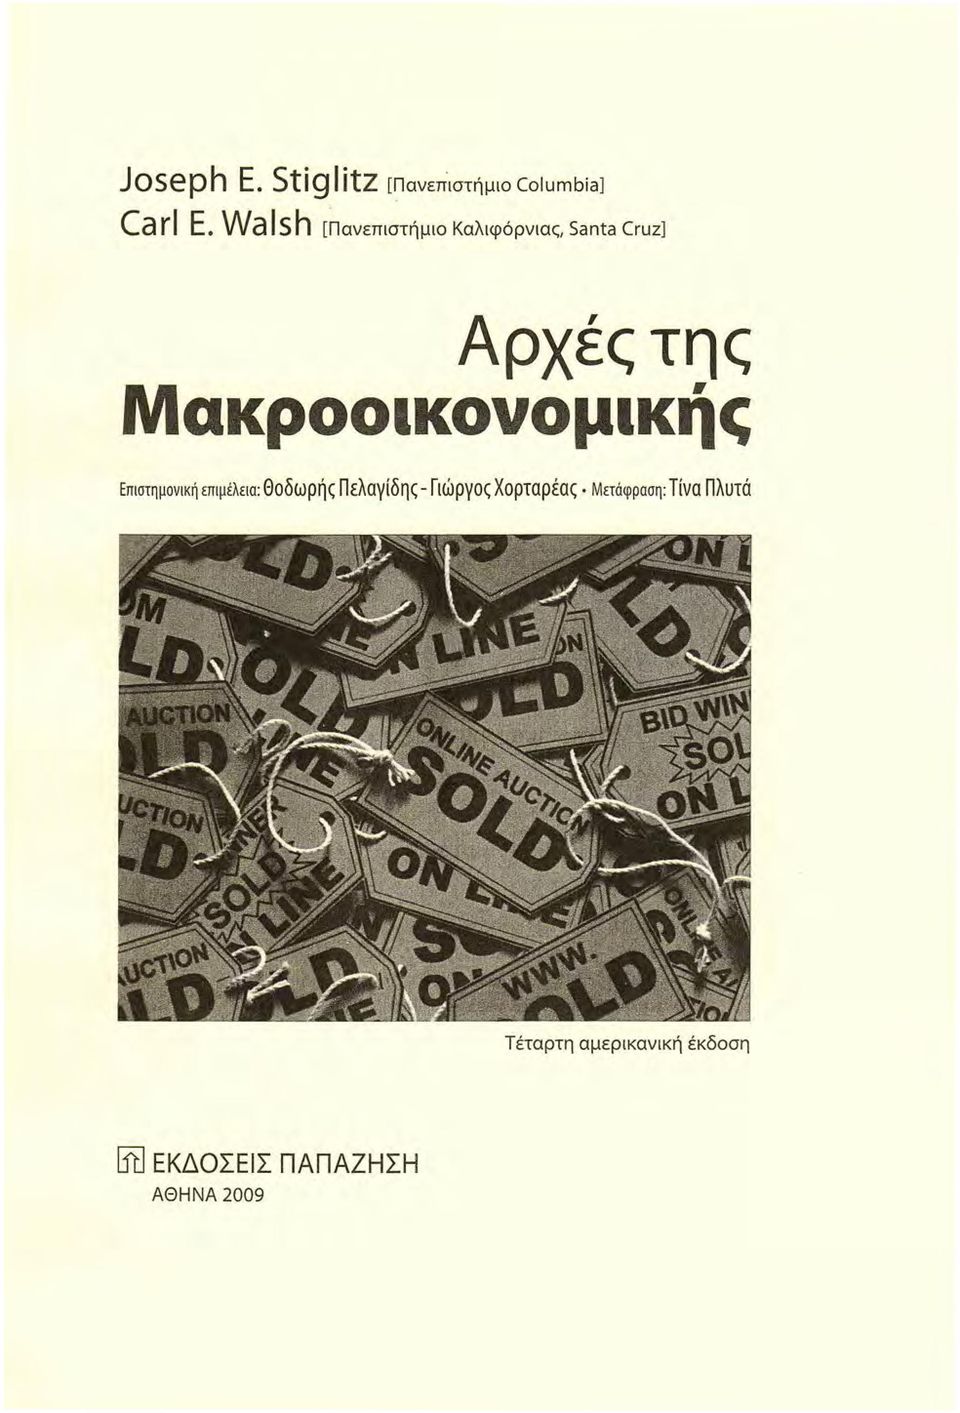 Μακροοικονομικής Επιστημονική επιμέλεια: Θοδωρής Πελαγίδης- Γιώργος